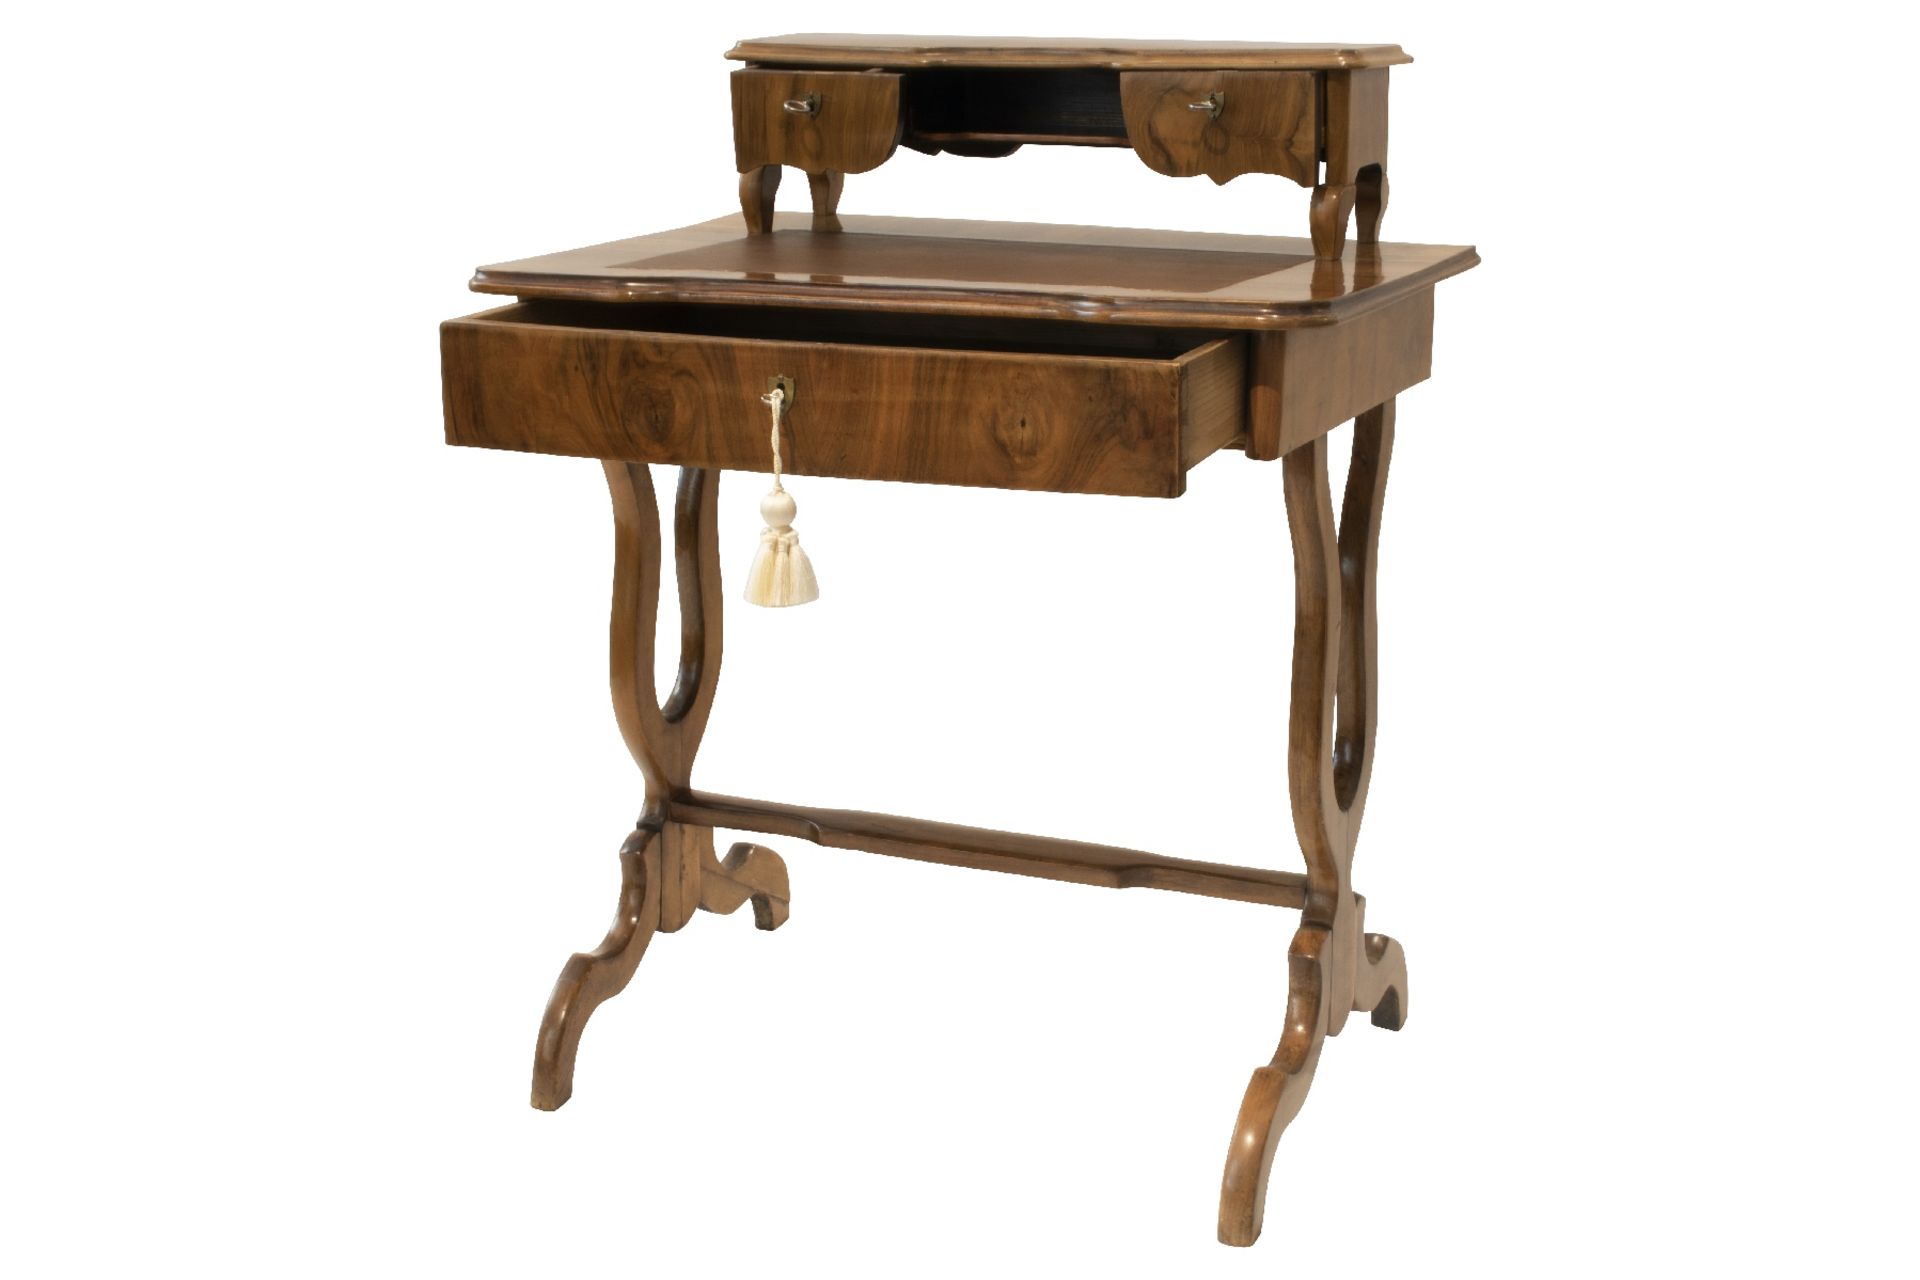 Biedermeier Schreibtisch | Biedermeier Writing Desk - Image 3 of 10